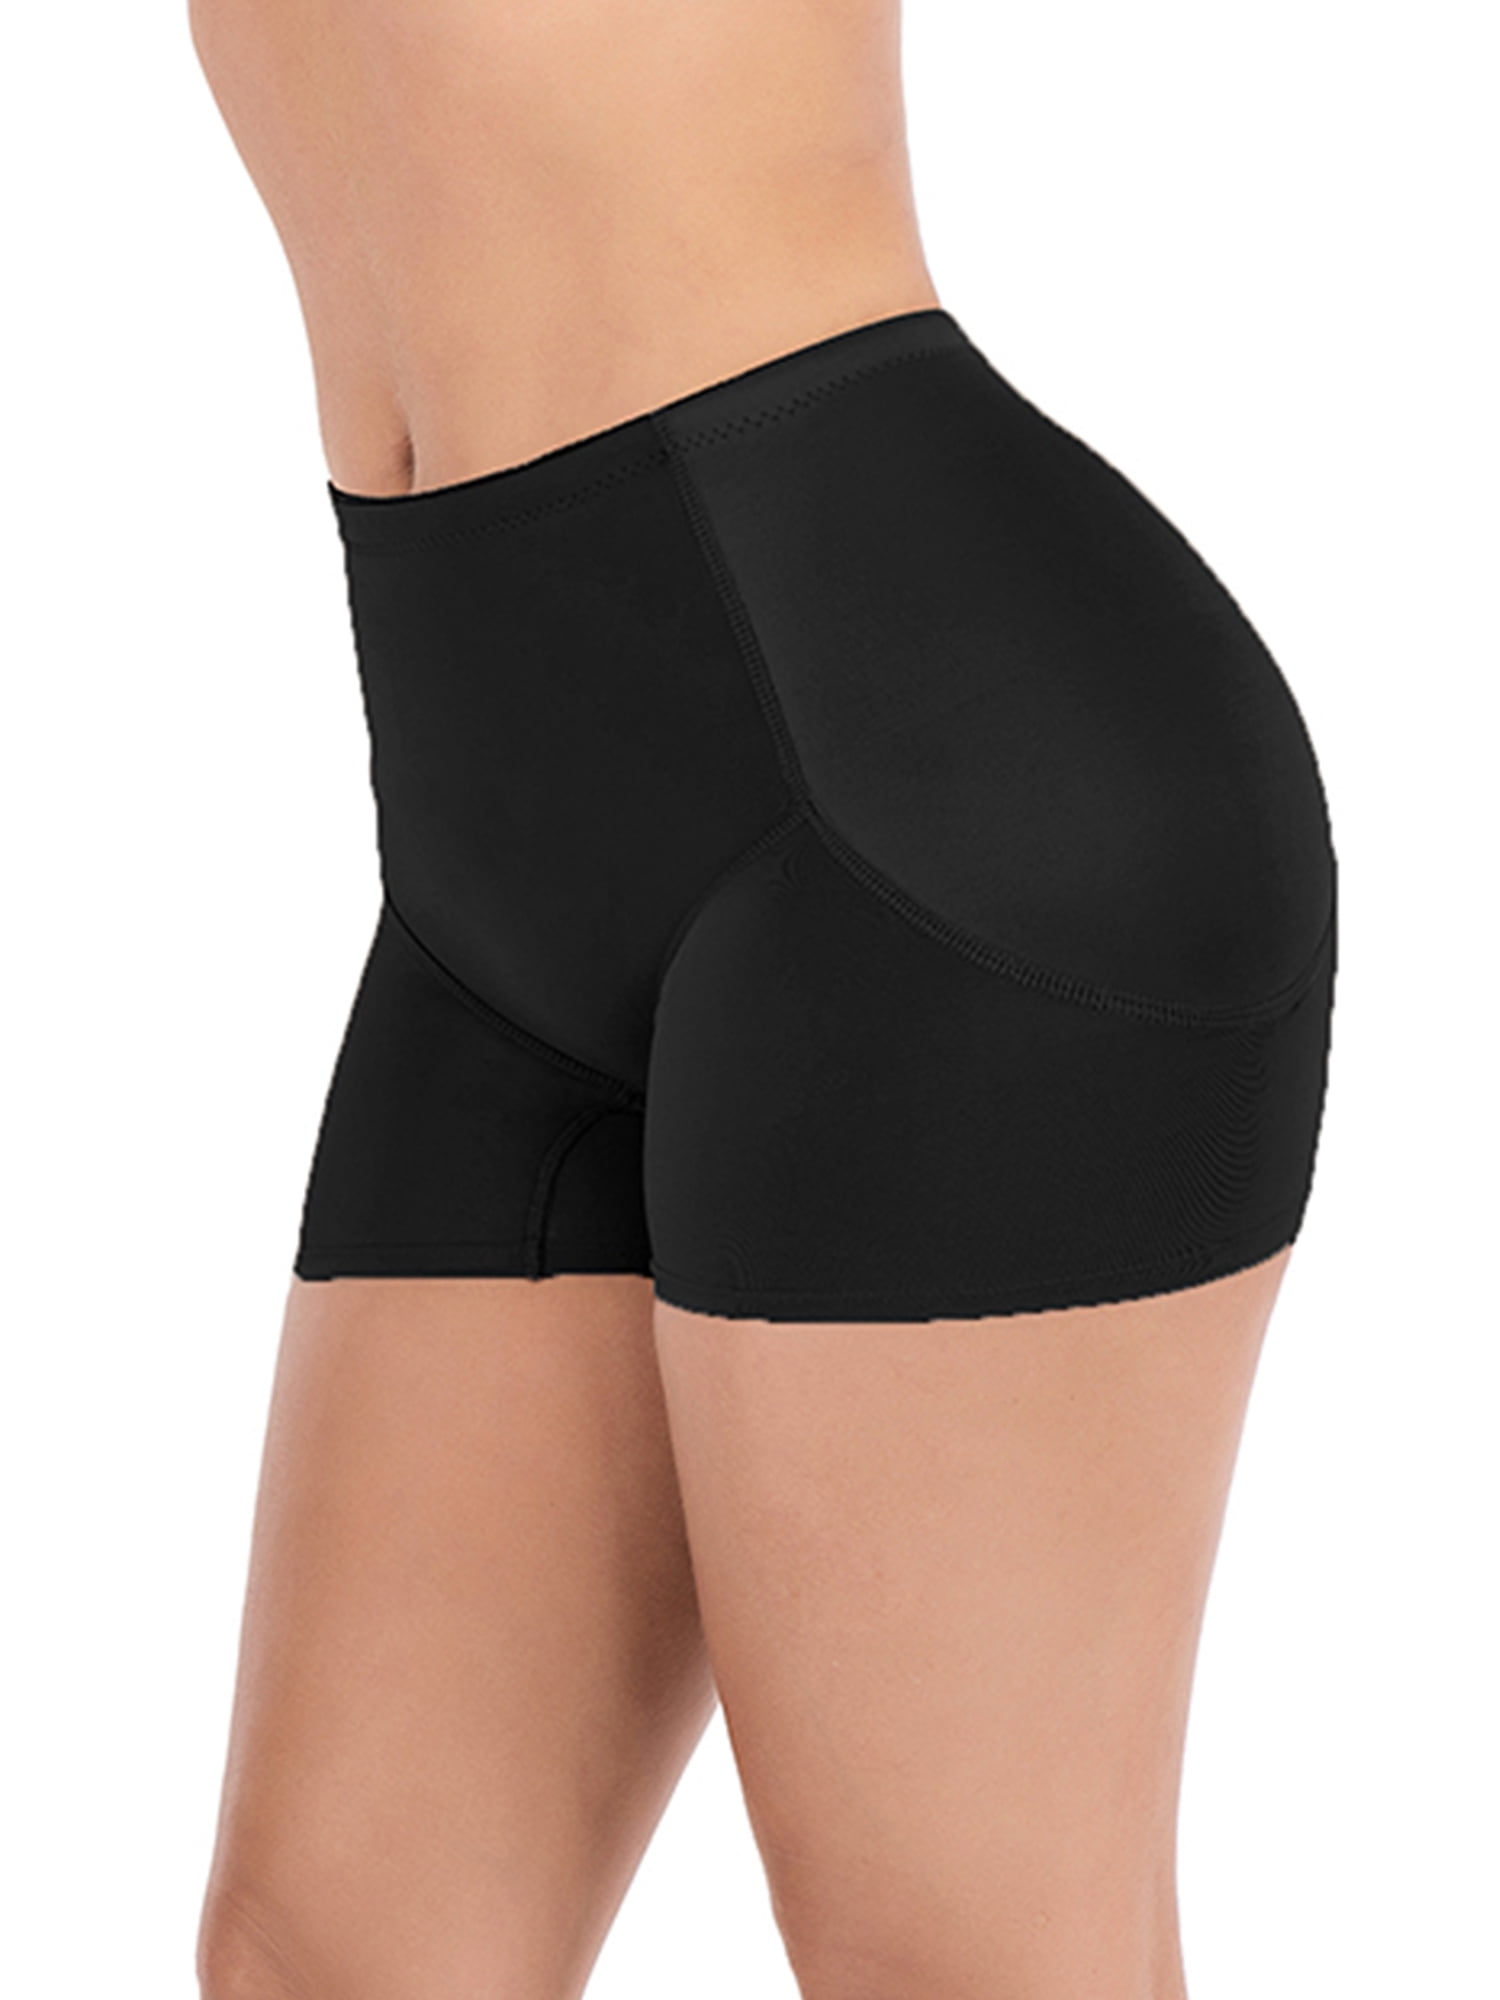 Padded Underwear Women Seamless Butt Hip Enhancer Panties Booty Lifter Shaper Butt Shapewear 